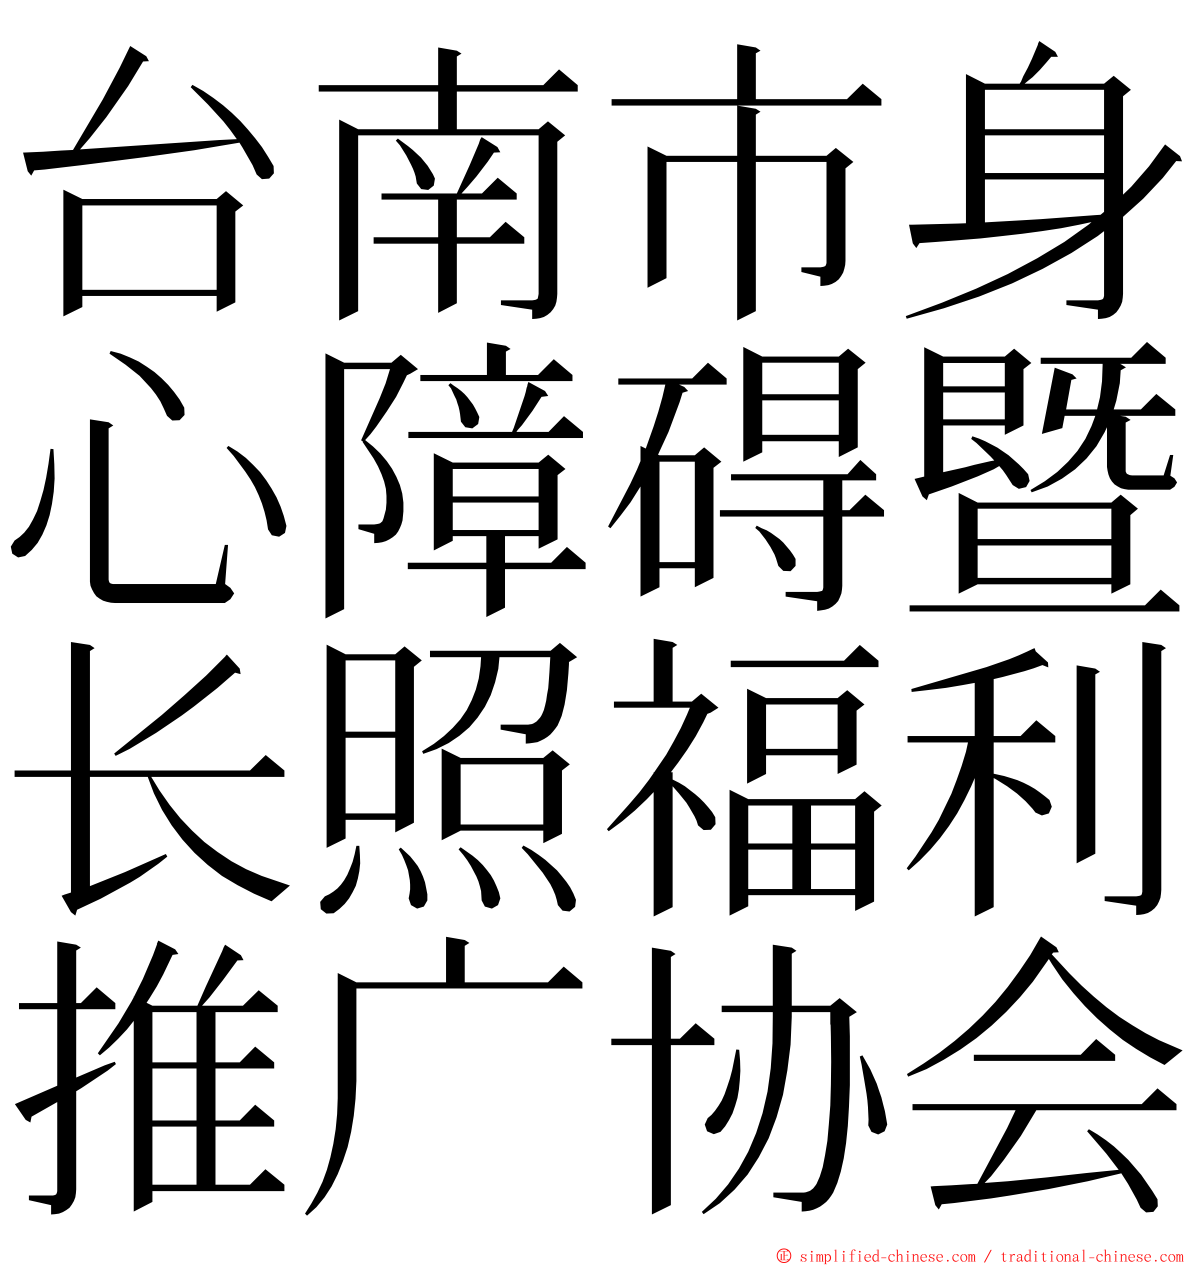 台南市身心障碍暨长照福利推广协会 ming font